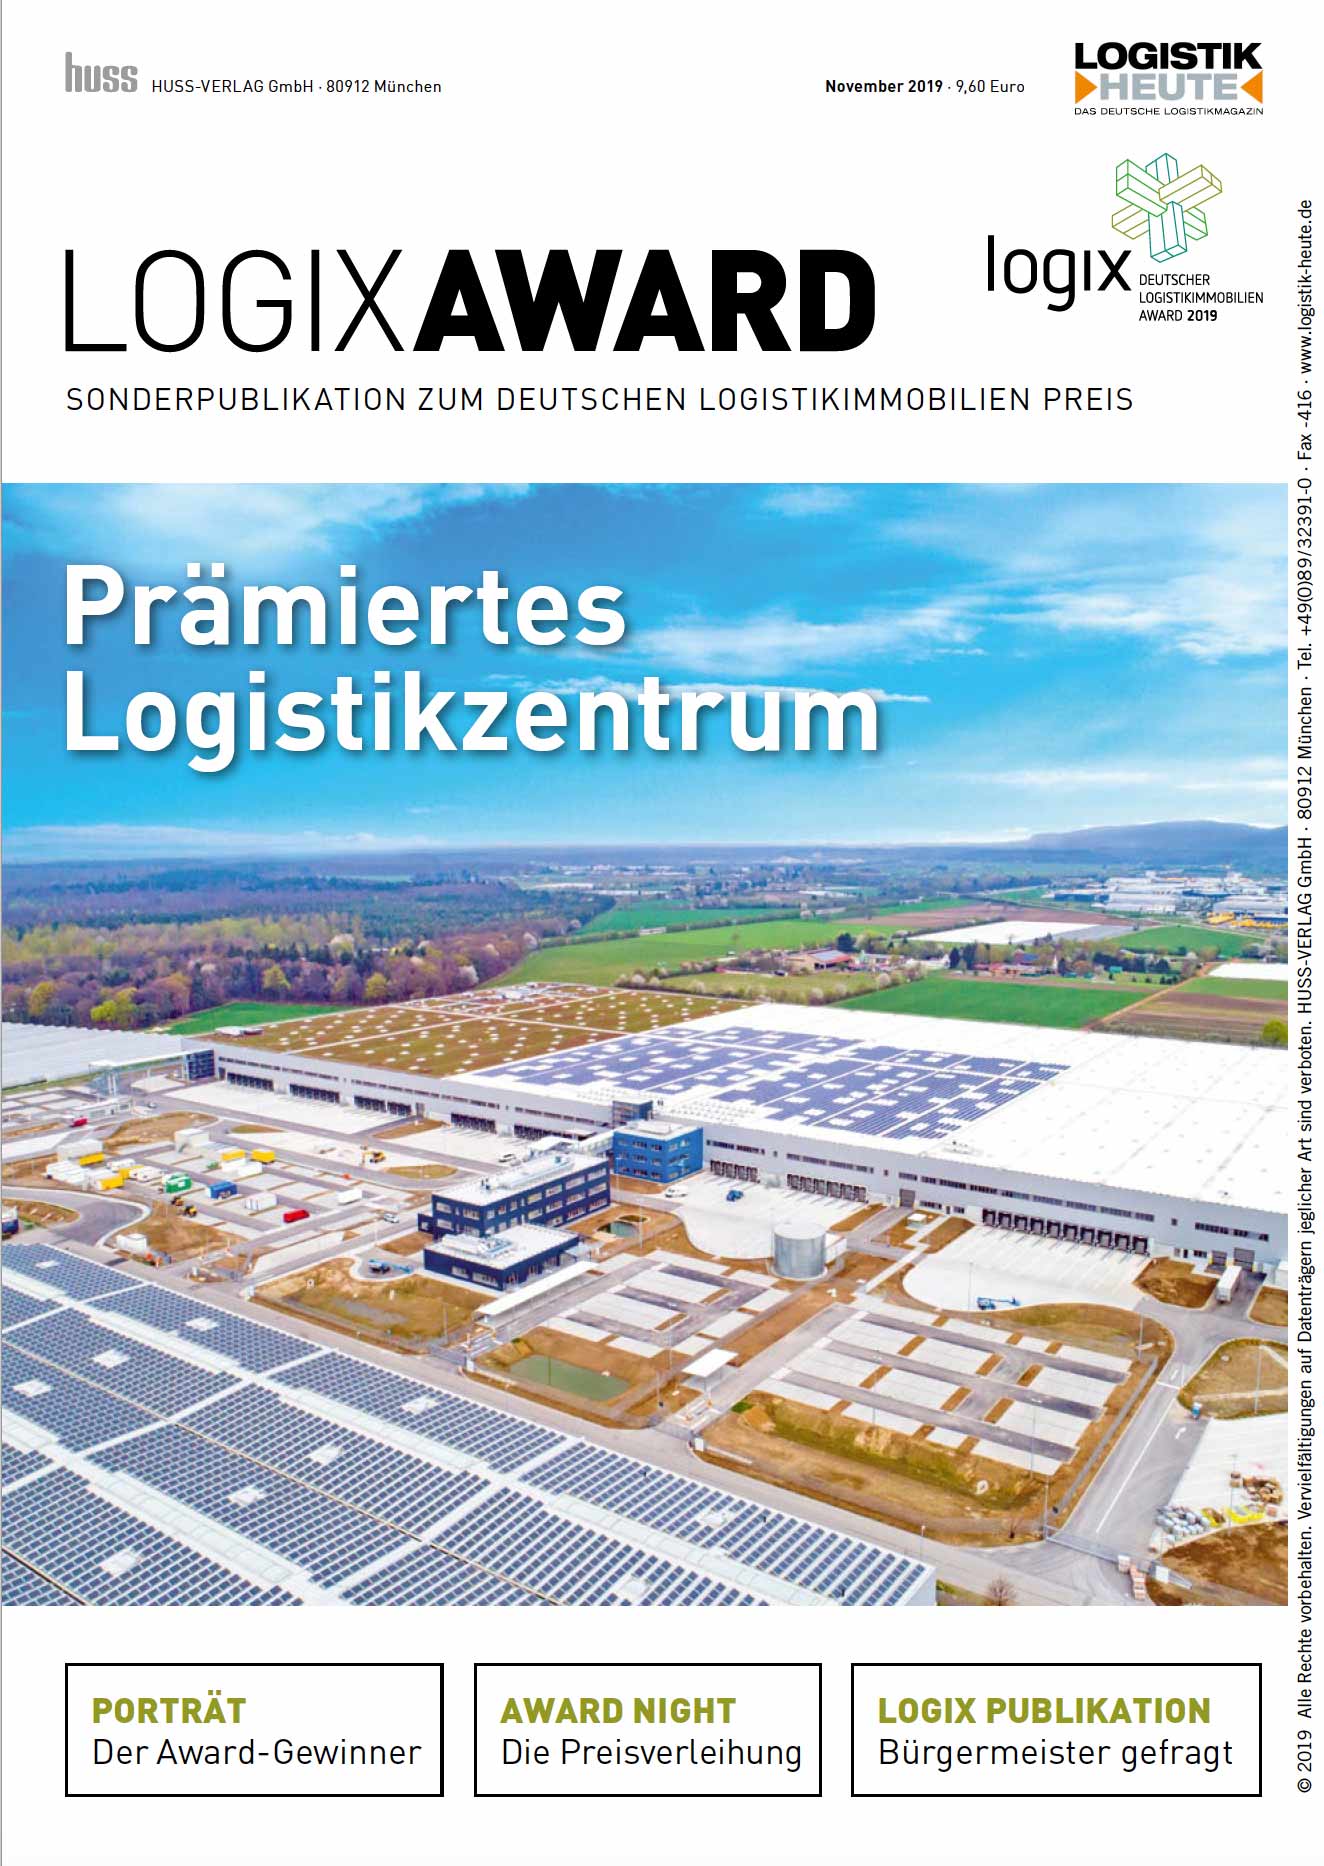 Die Fachzeitschrift LOGISTIK HEUTE aus dem Münchener HUSS-Verlag hat erstmals ein Supplement zum Deutschen Logistikimmobilienpreis Logix Award sowie der dahinterstehenden Initiative Logistikimmobilien, kurz Logix produziert.